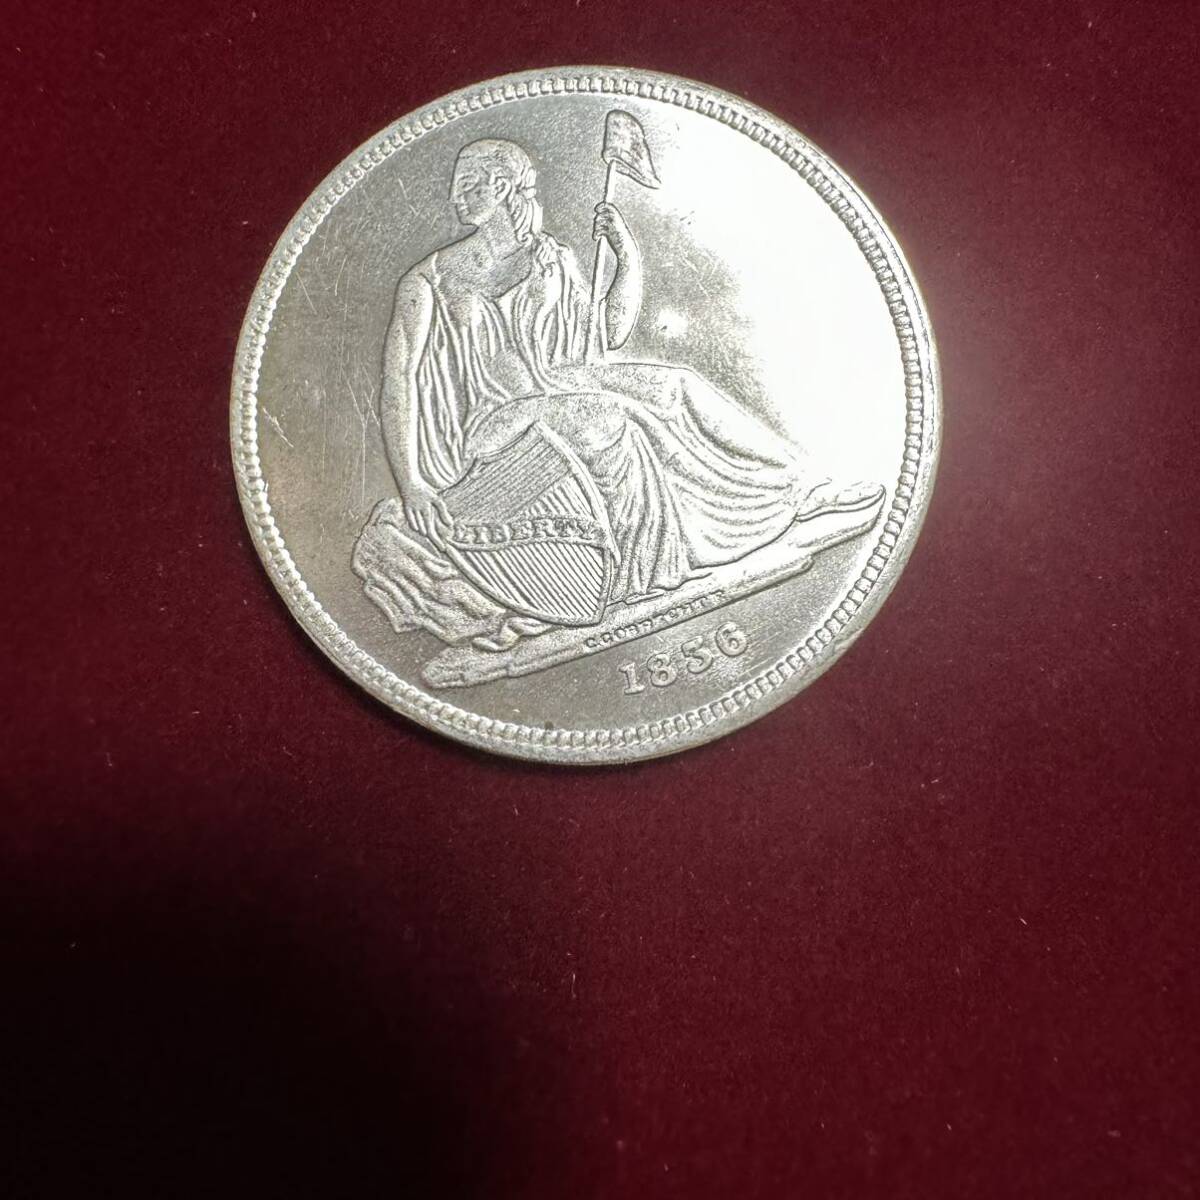 ブラジル 硬貨 古銭 ブラジル発見400周年記念 1900年 「ブラジルアメリカ合衆国共和国」銘 1000レイ 記念幣 コイン 銀貨 外国古銭 の画像7